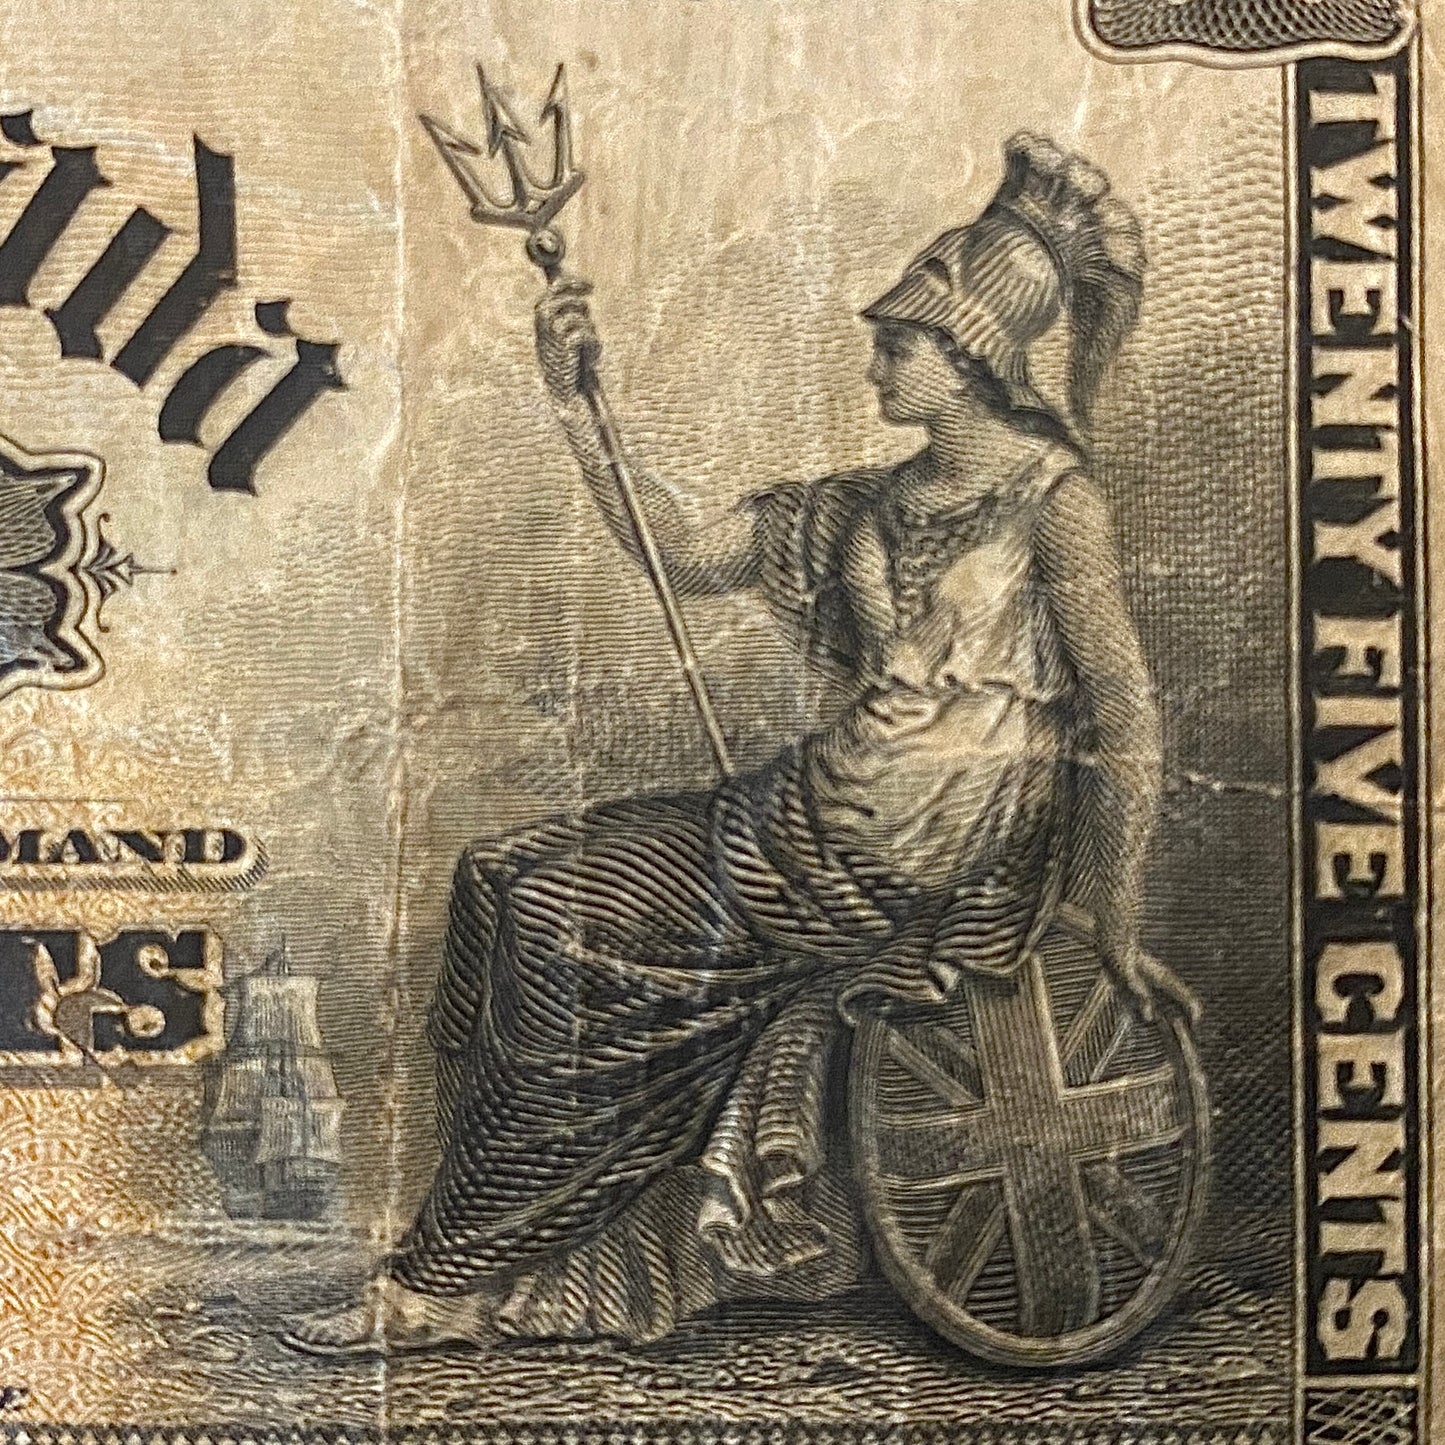 Dominion of Canada 25 Cent Shinplaster 1900